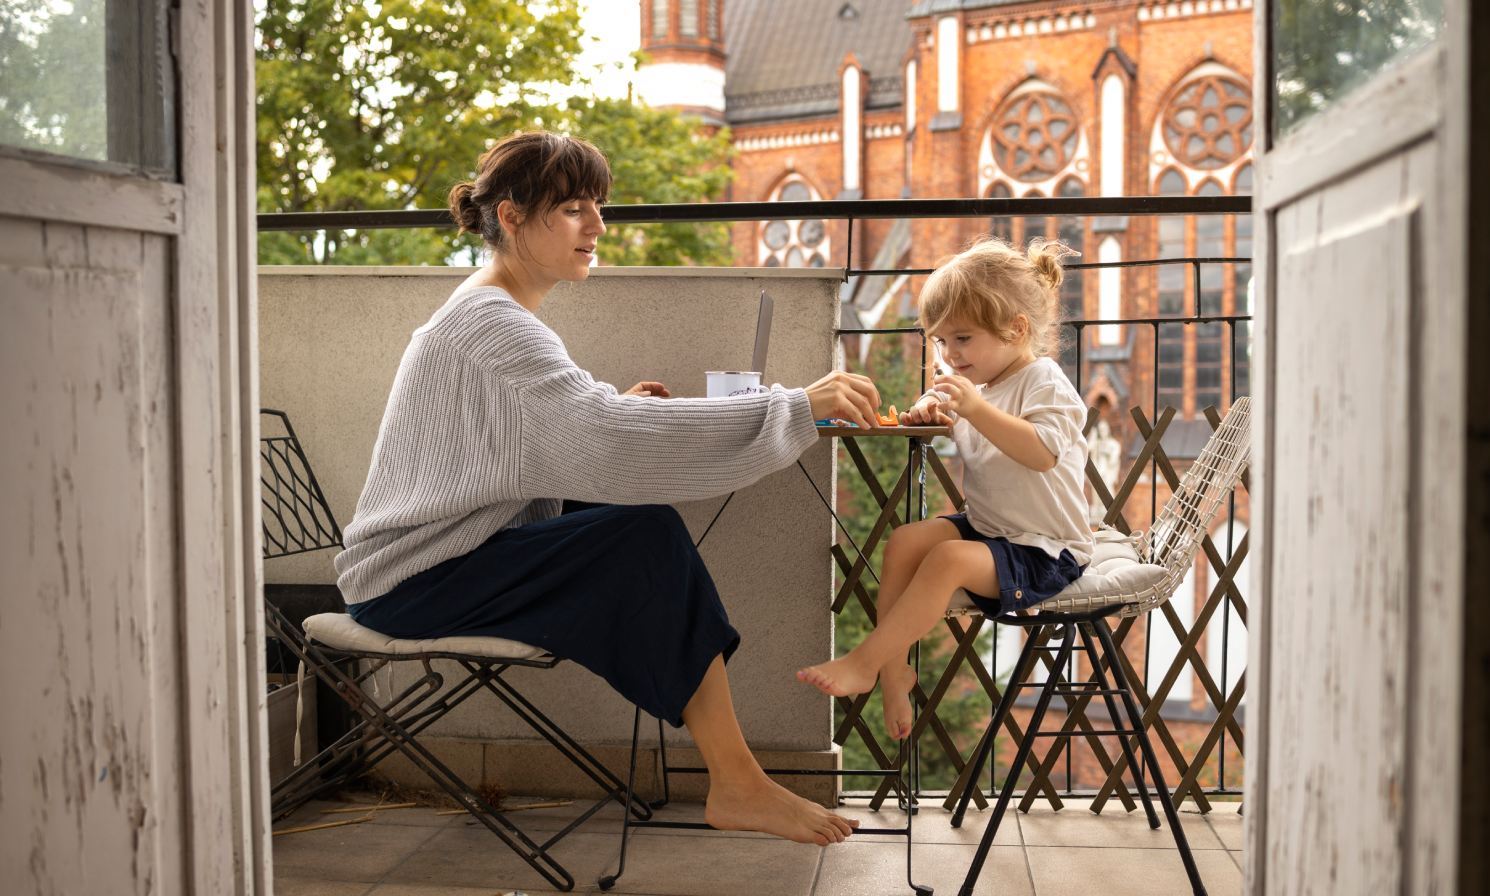 Ruhezeiten in einer mietwohnung. Eine Mutter und ihre kleine Tochter verbringen eine ruhige Zeit auf einem Balkon.